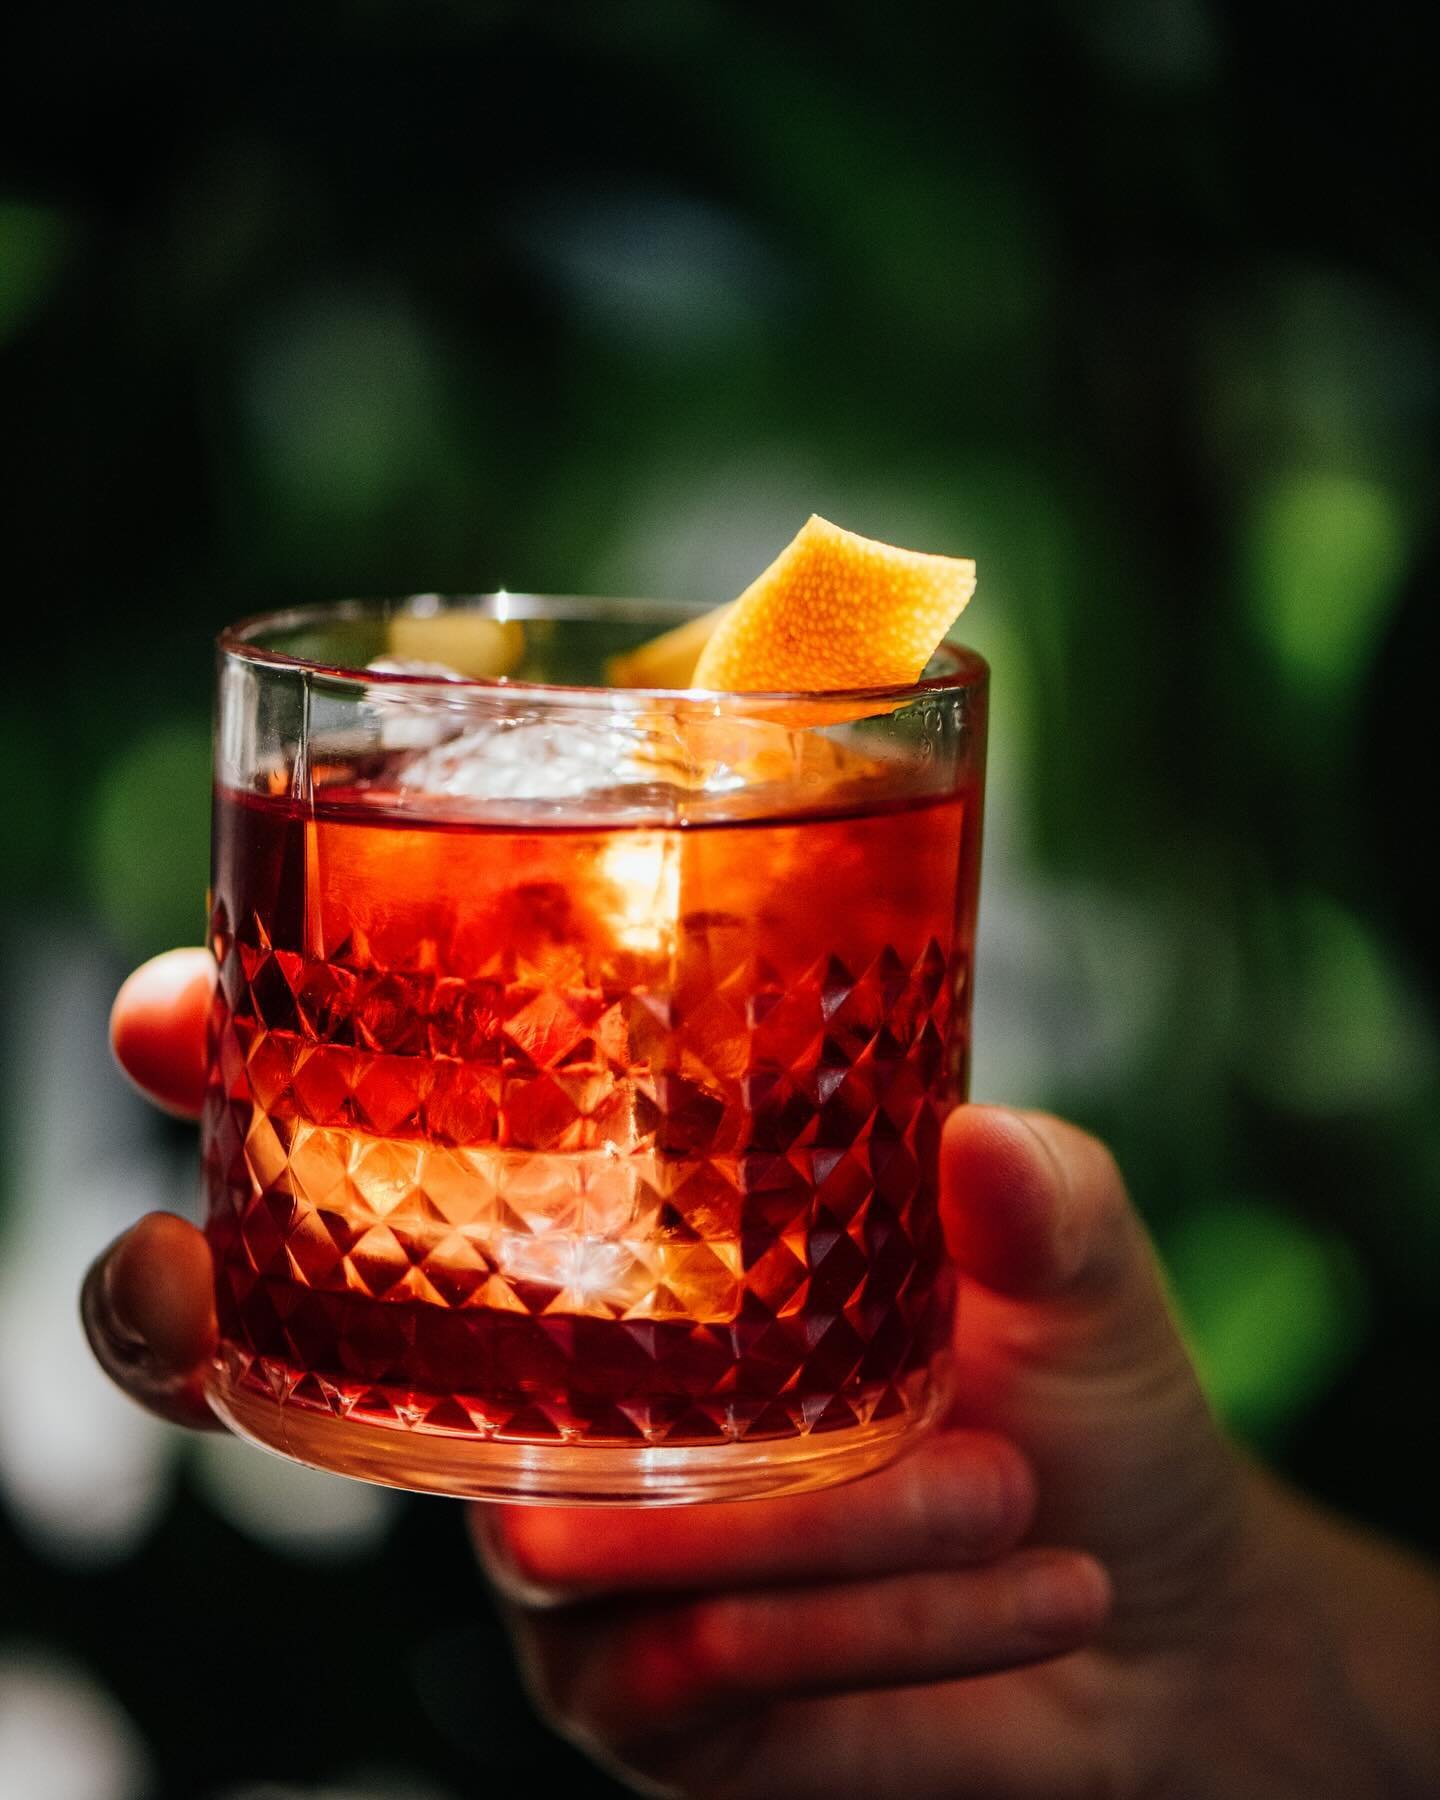 Profitez de l&rsquo;occasion de votre prochaine visite pour essayer l&rsquo;un de nos d&eacute;licieux cocktails. 🍸

#cocktail #drinks #negroni #bar #winebar